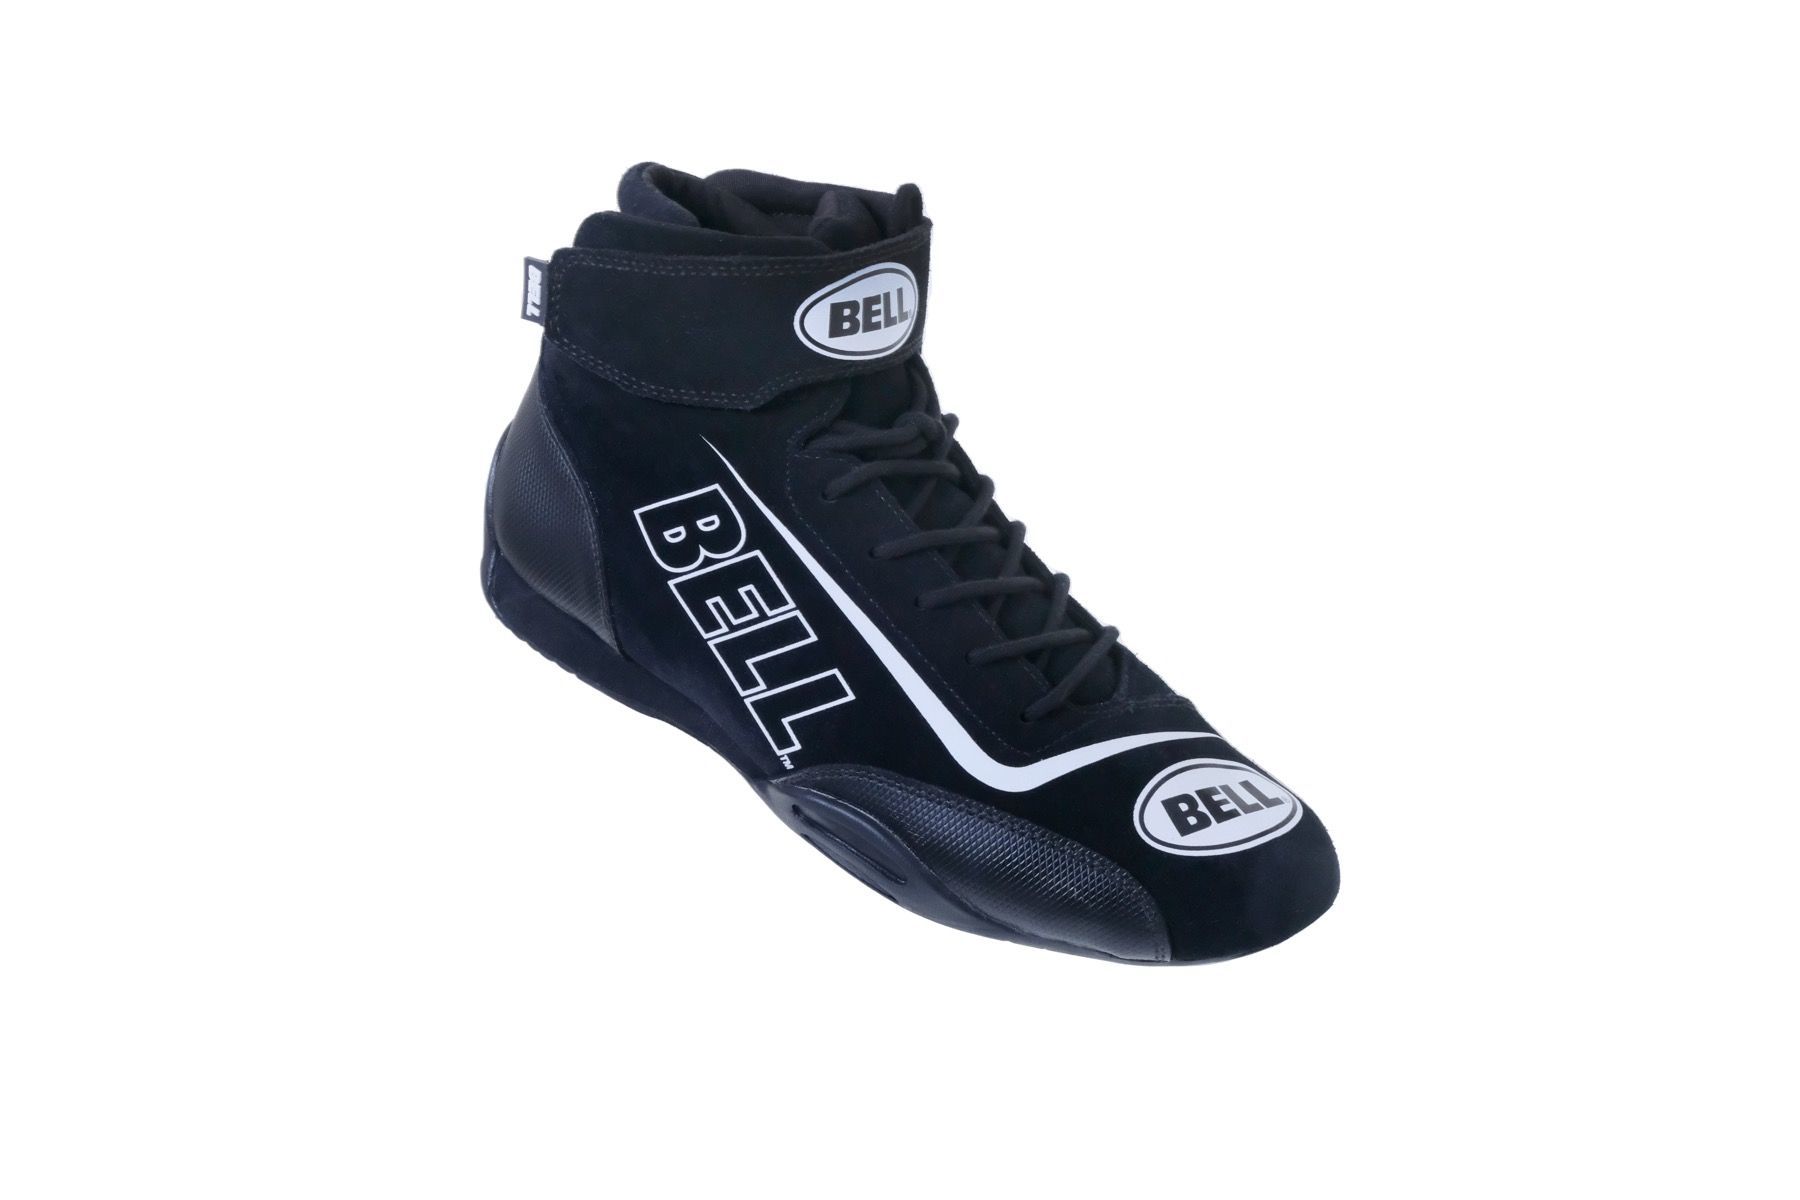 Bell Sport-TX Shoe Black 12 Sfi 3.3/5 - BR30023